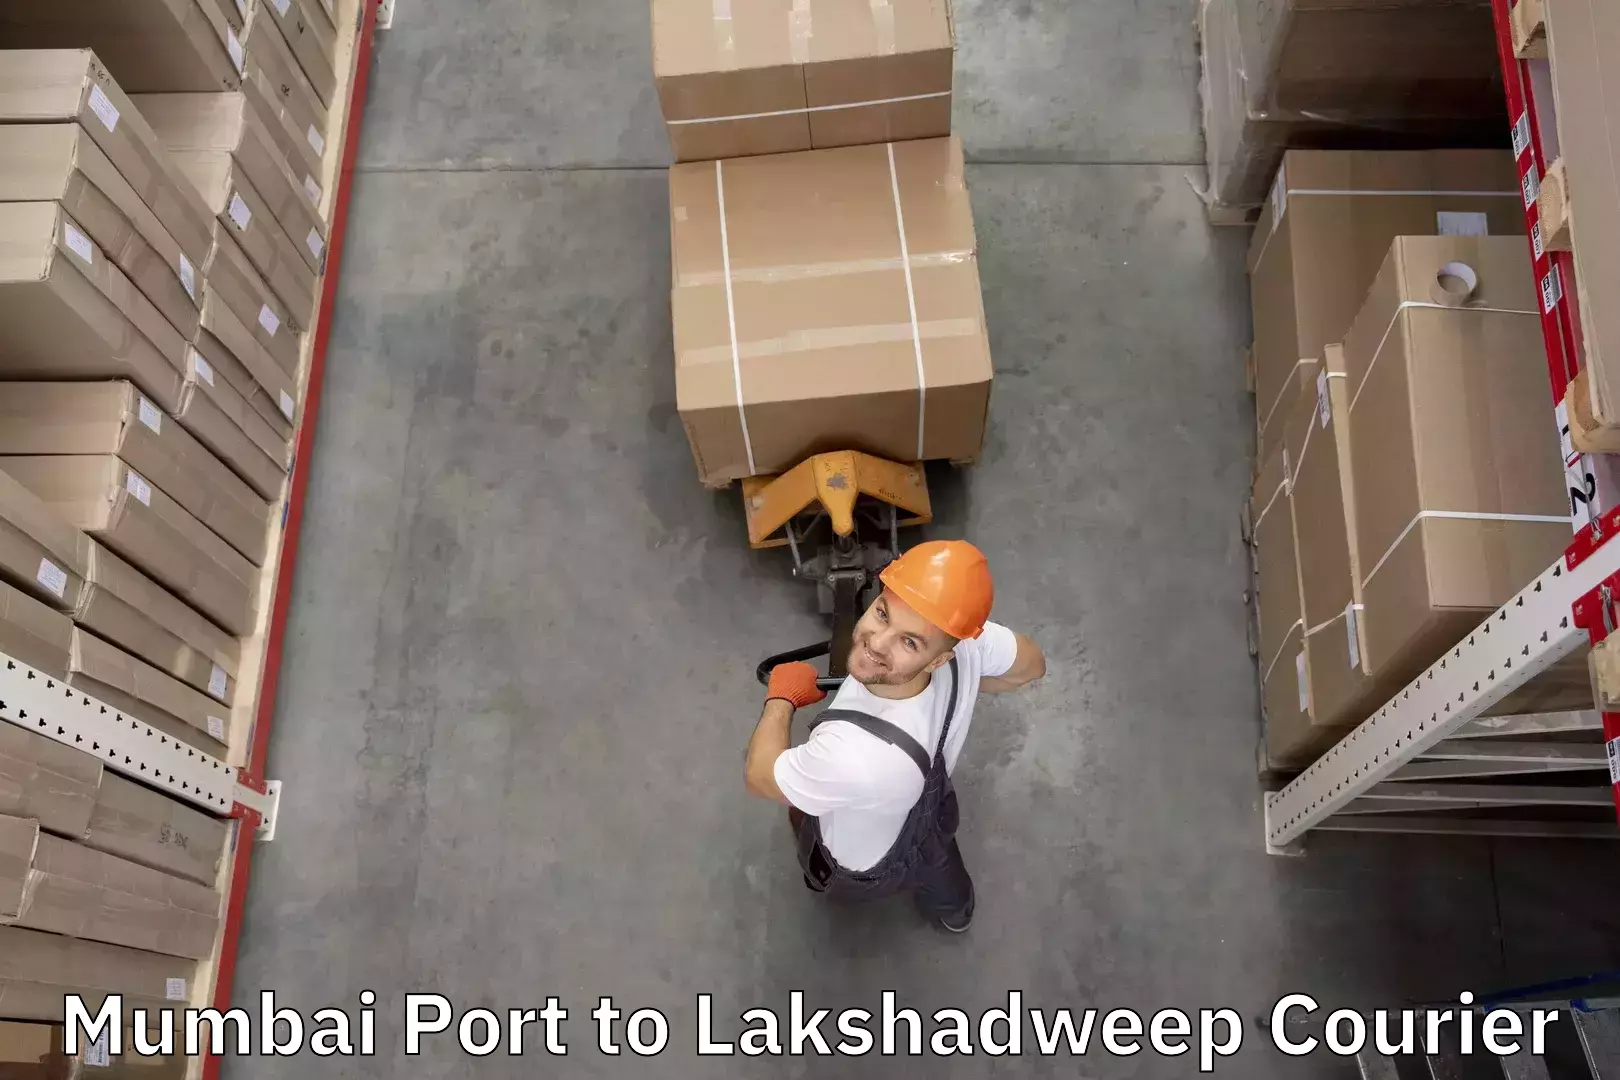 Electronic items luggage shipping Mumbai Port to Lakshadweep